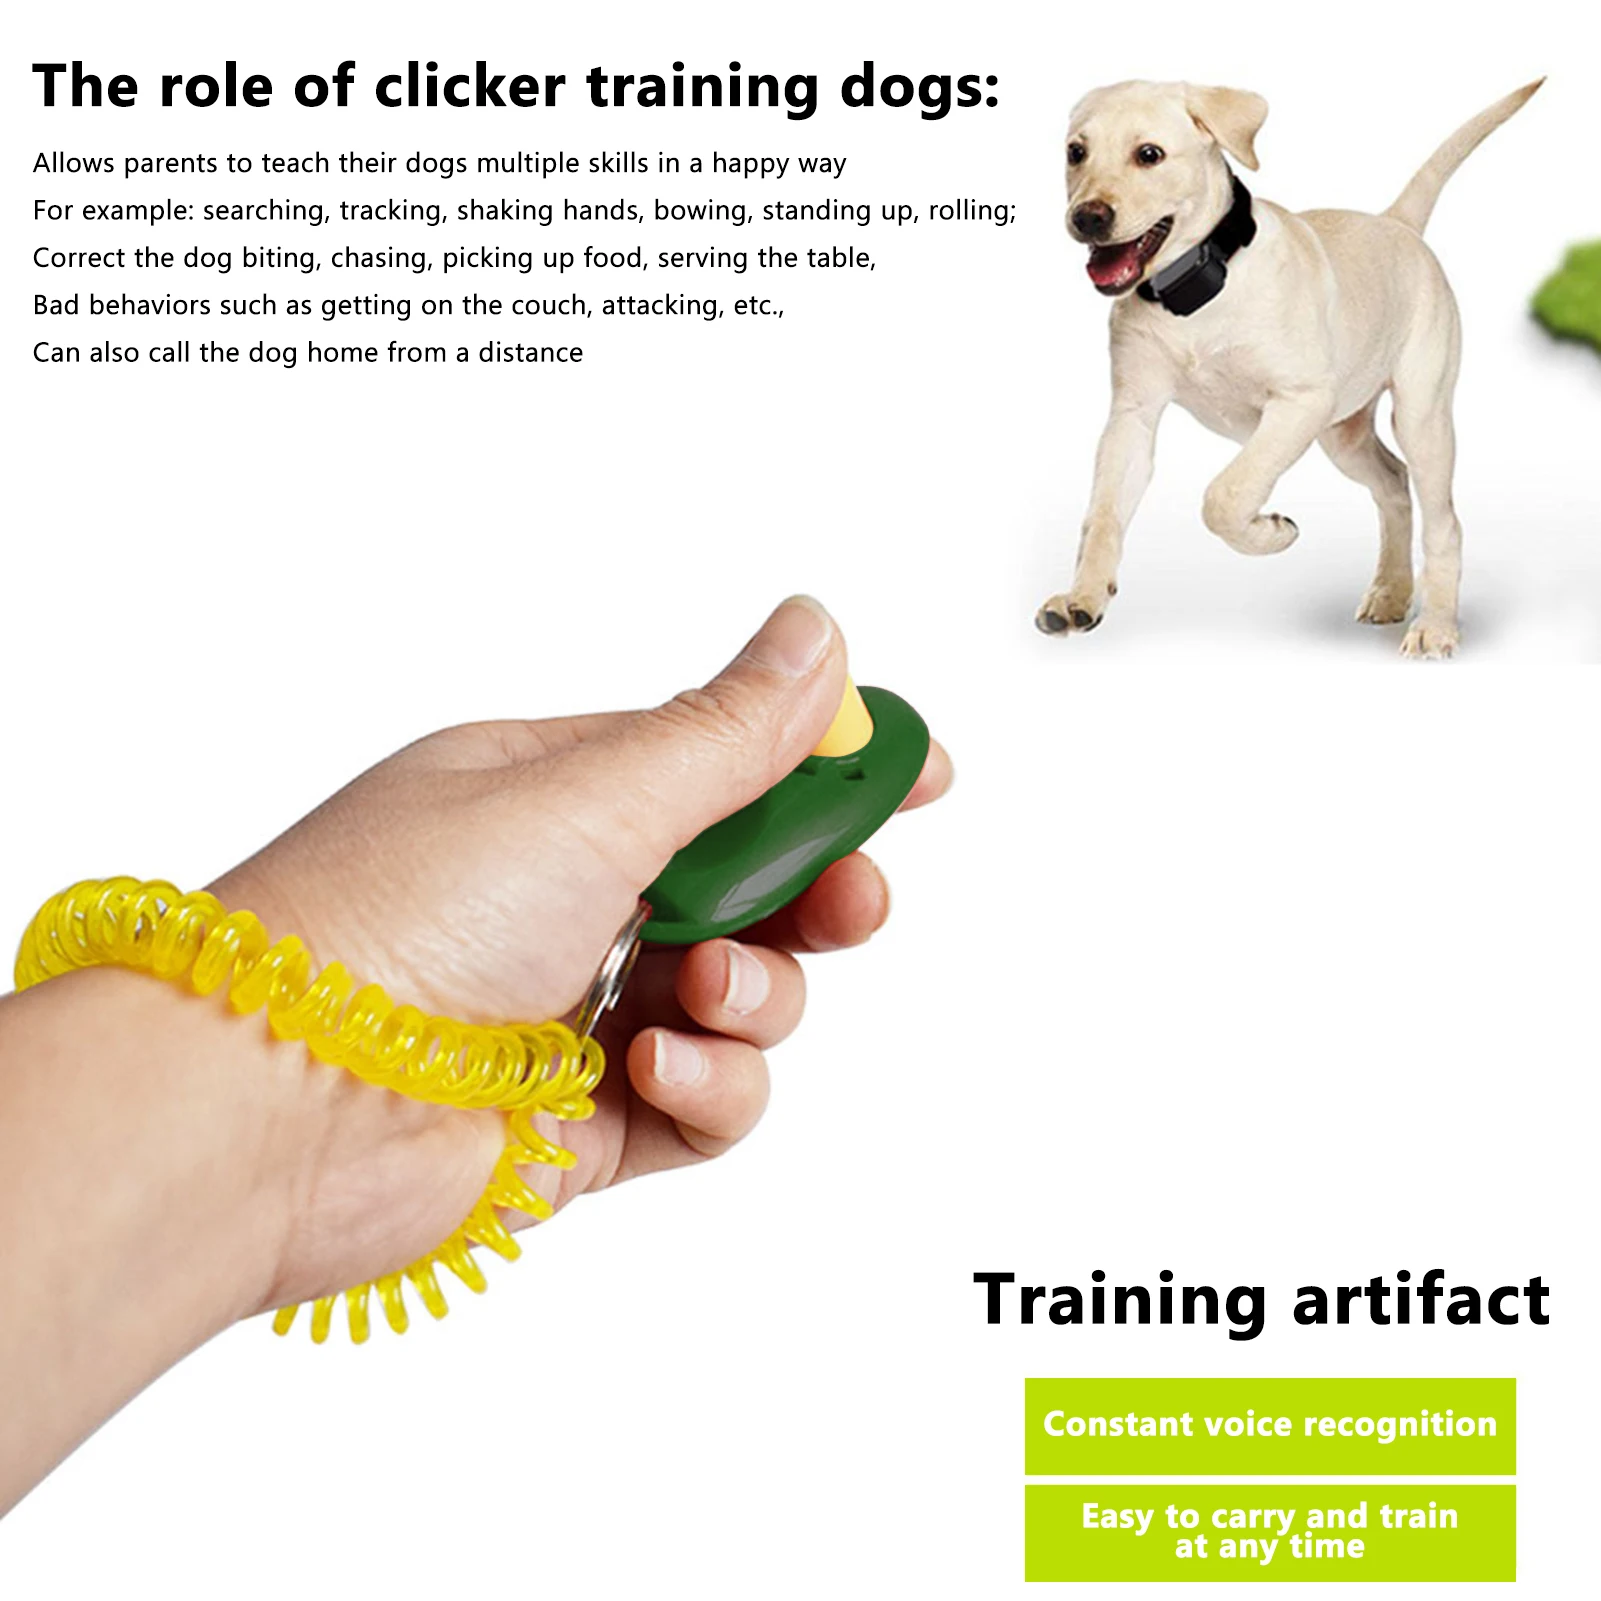 Кликер для собак: эффективное средство для дрессировки и обучения